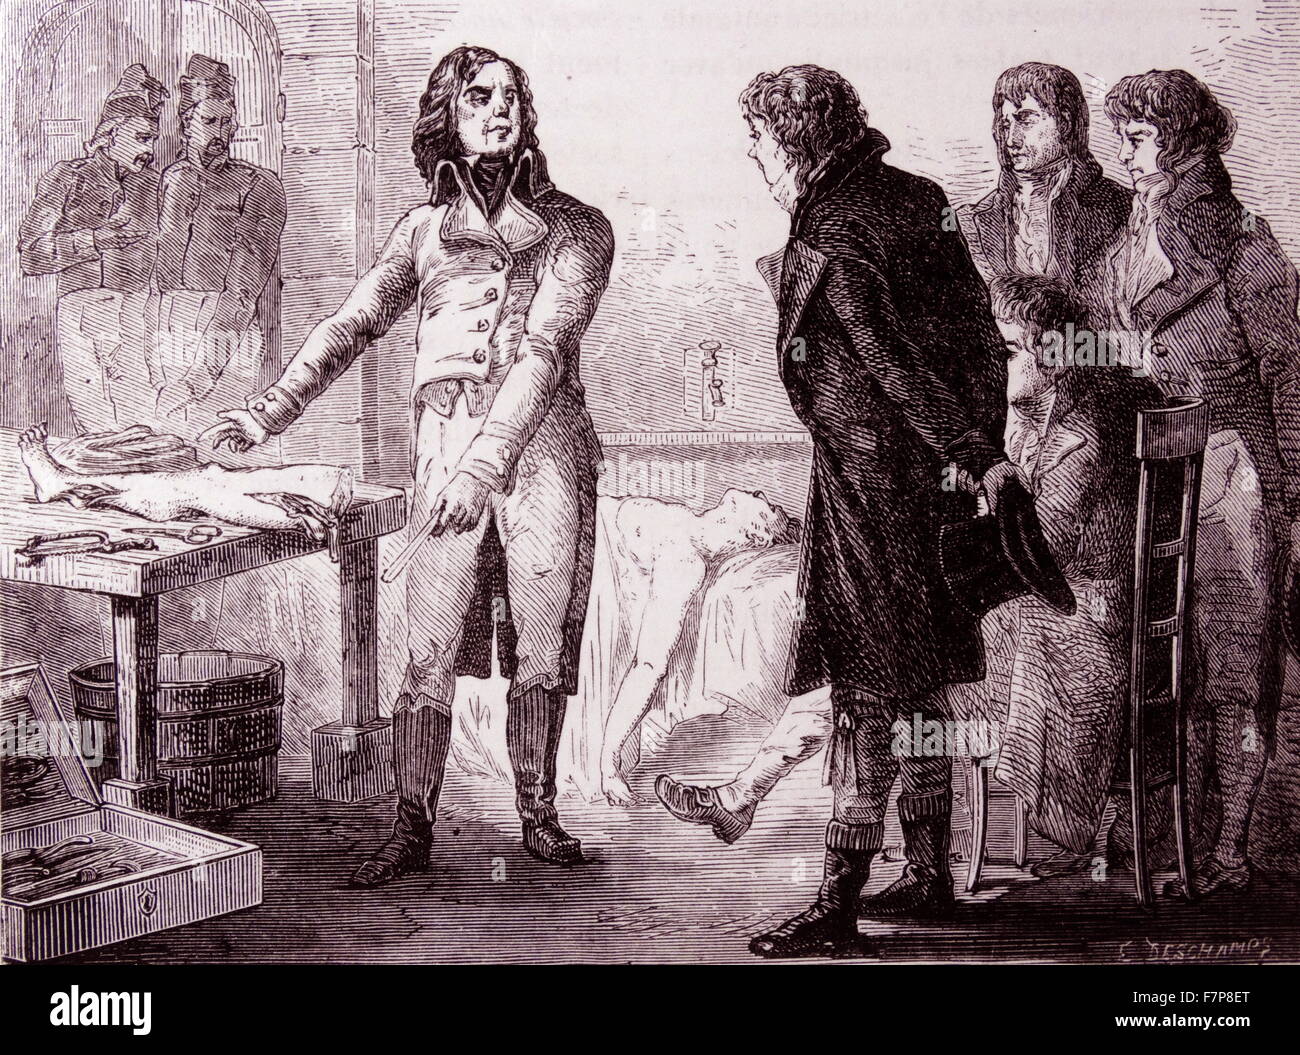 Dominique Jean LARREY - 1766-1842French Militärarzt: ging mit Napoleon nach Ägypten im Jahr 1798. Große Geschwindigkeit bei Amputation (13-15 Sekunden für ein Bein). Hier gezeigten Muskelkontraktionen in einem vor kurzem amputierten Gliedmaßen durch galvanische Effekte zeigen. Stockfoto